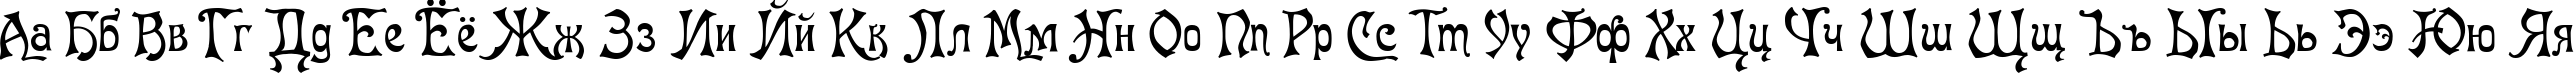 Пример написания русского алфавита шрифтом Baron Munchausen Normal